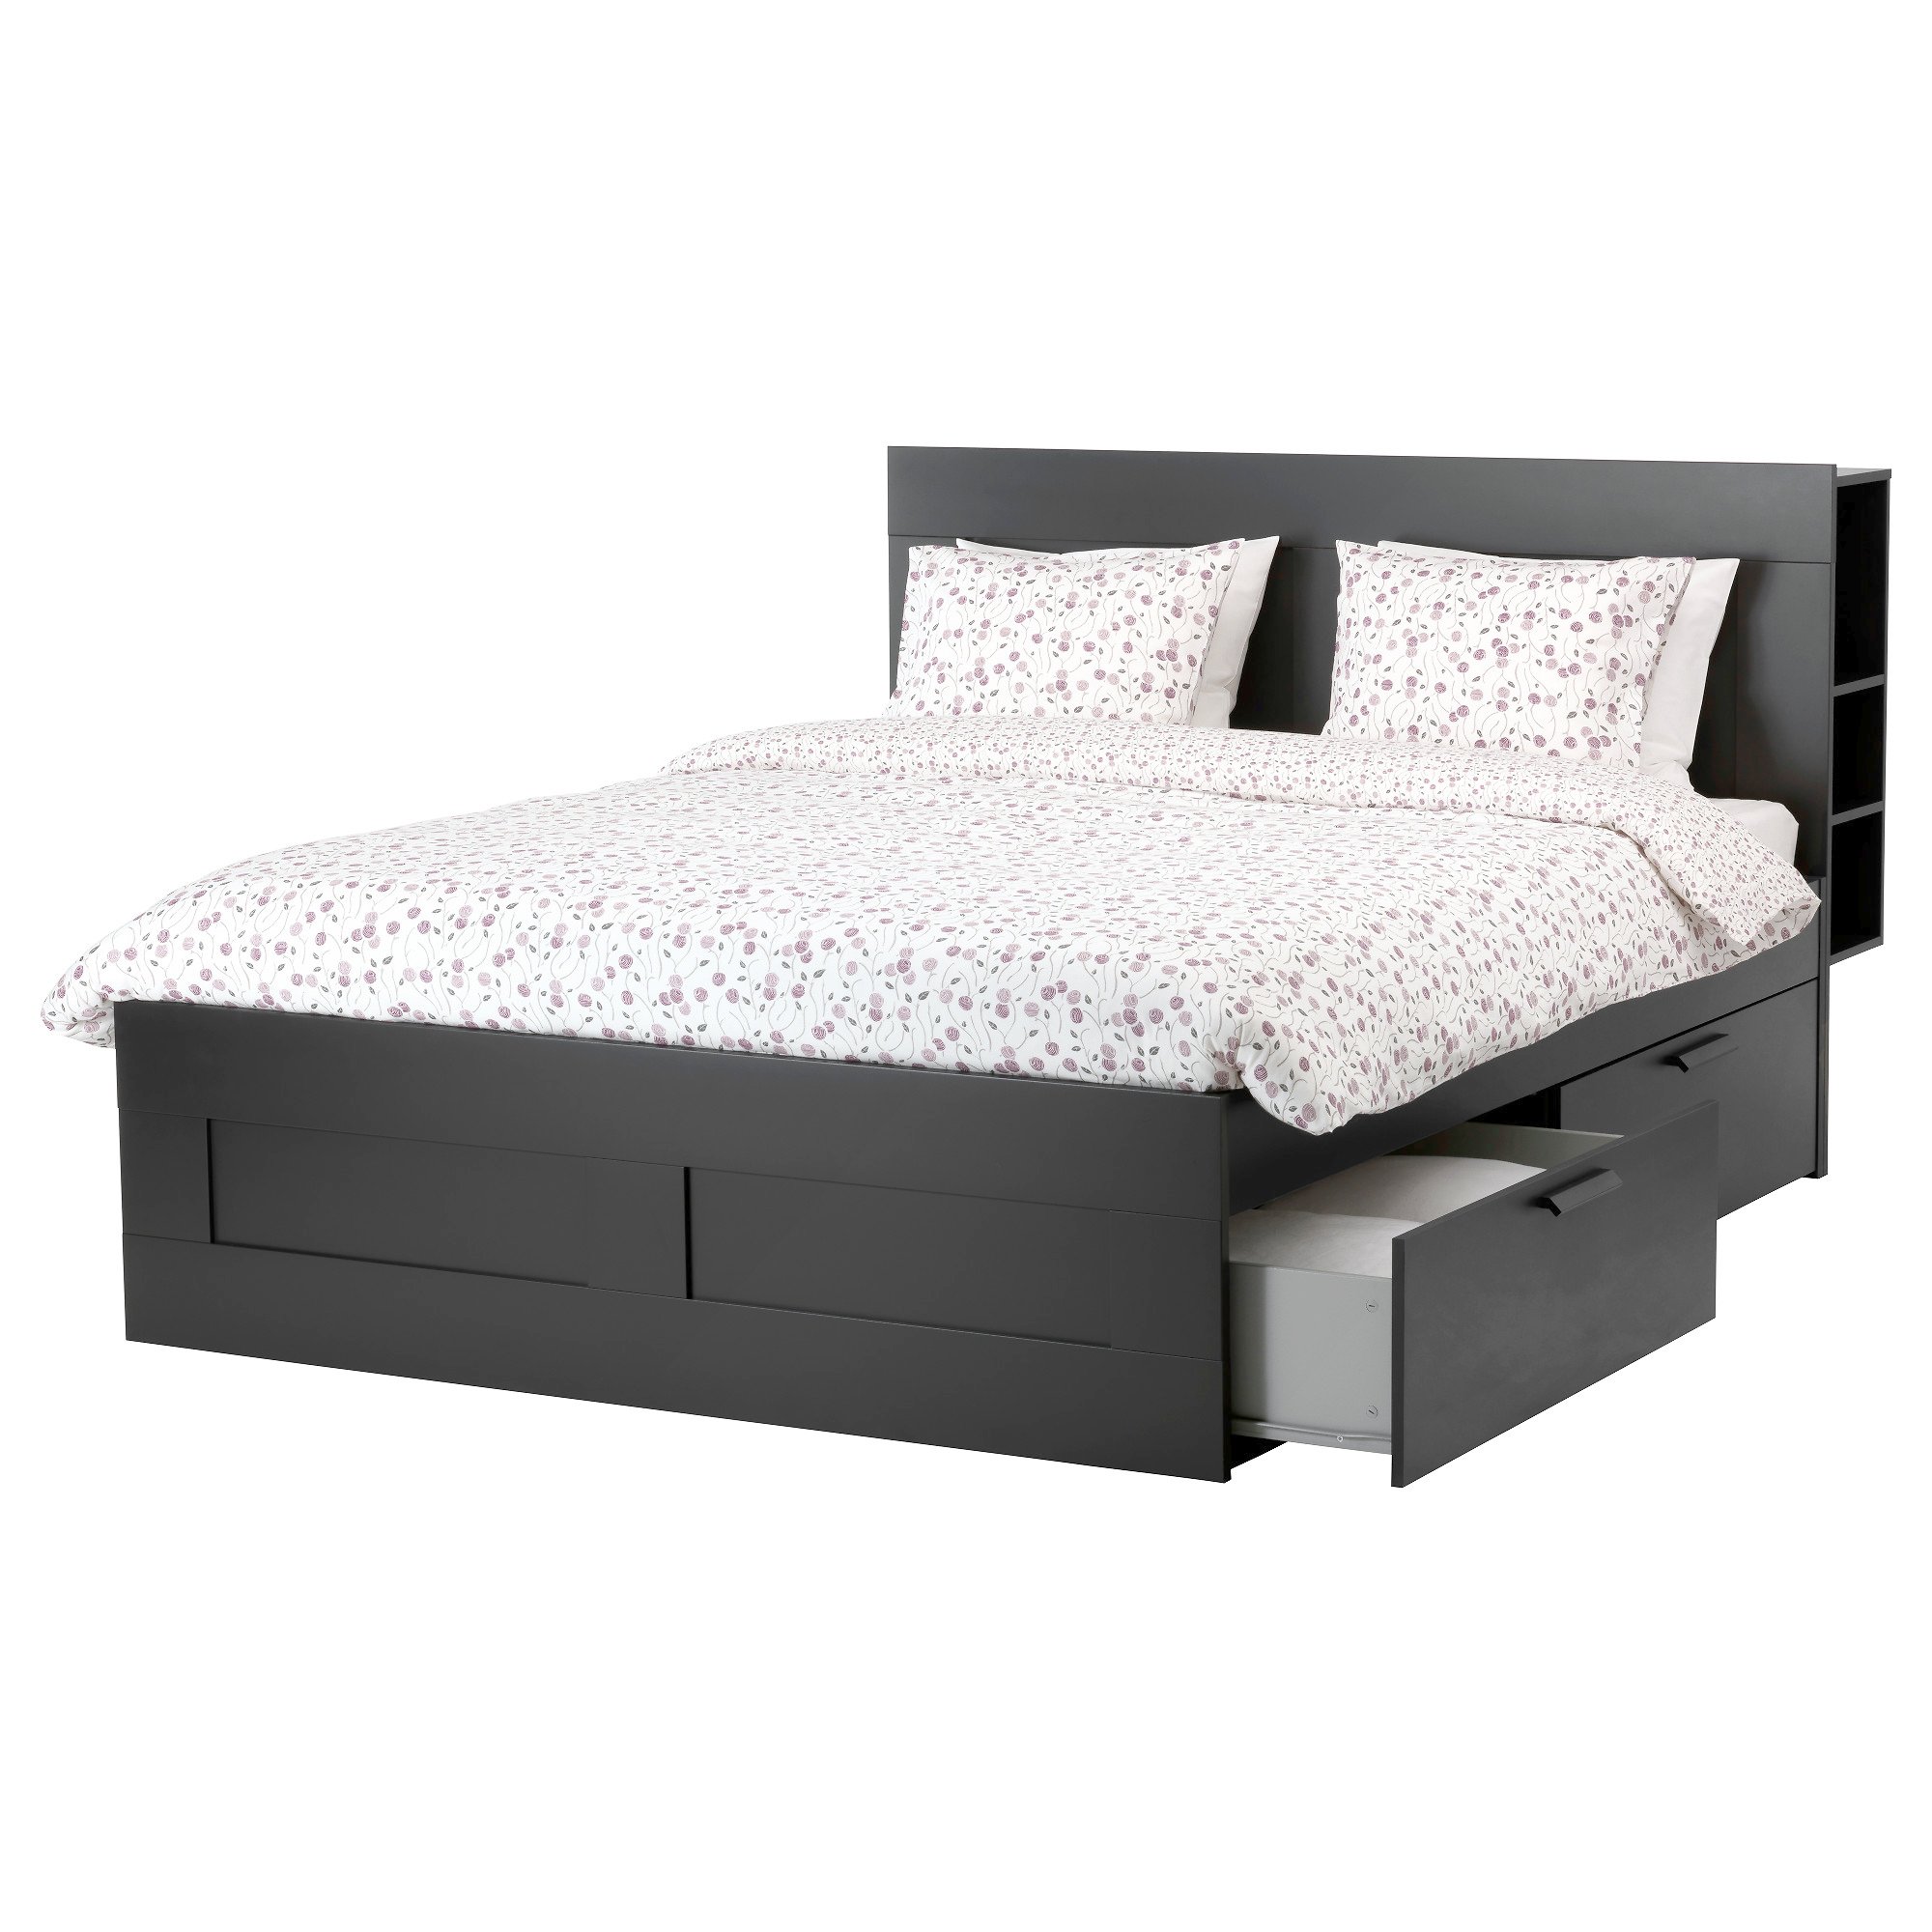 Amazing Ikea Queen Size Bed BRIMNES Bed Frame With Storage U0026 Headboard Queen, Luröy IKEA